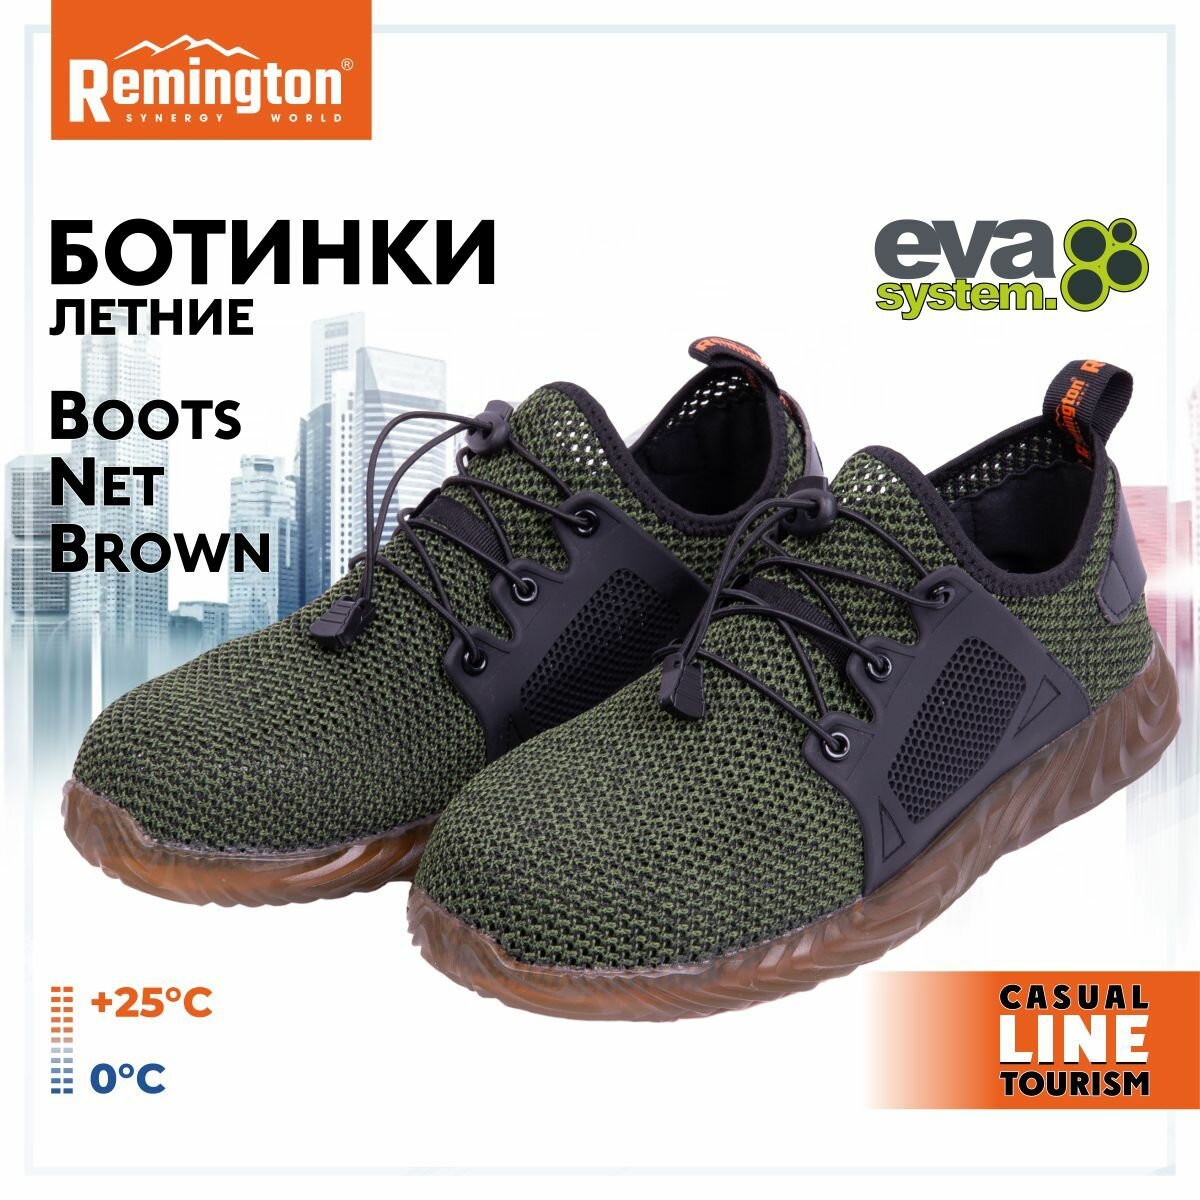 Ботинки Remington Boots Net Brown р. 42 RU0044-901